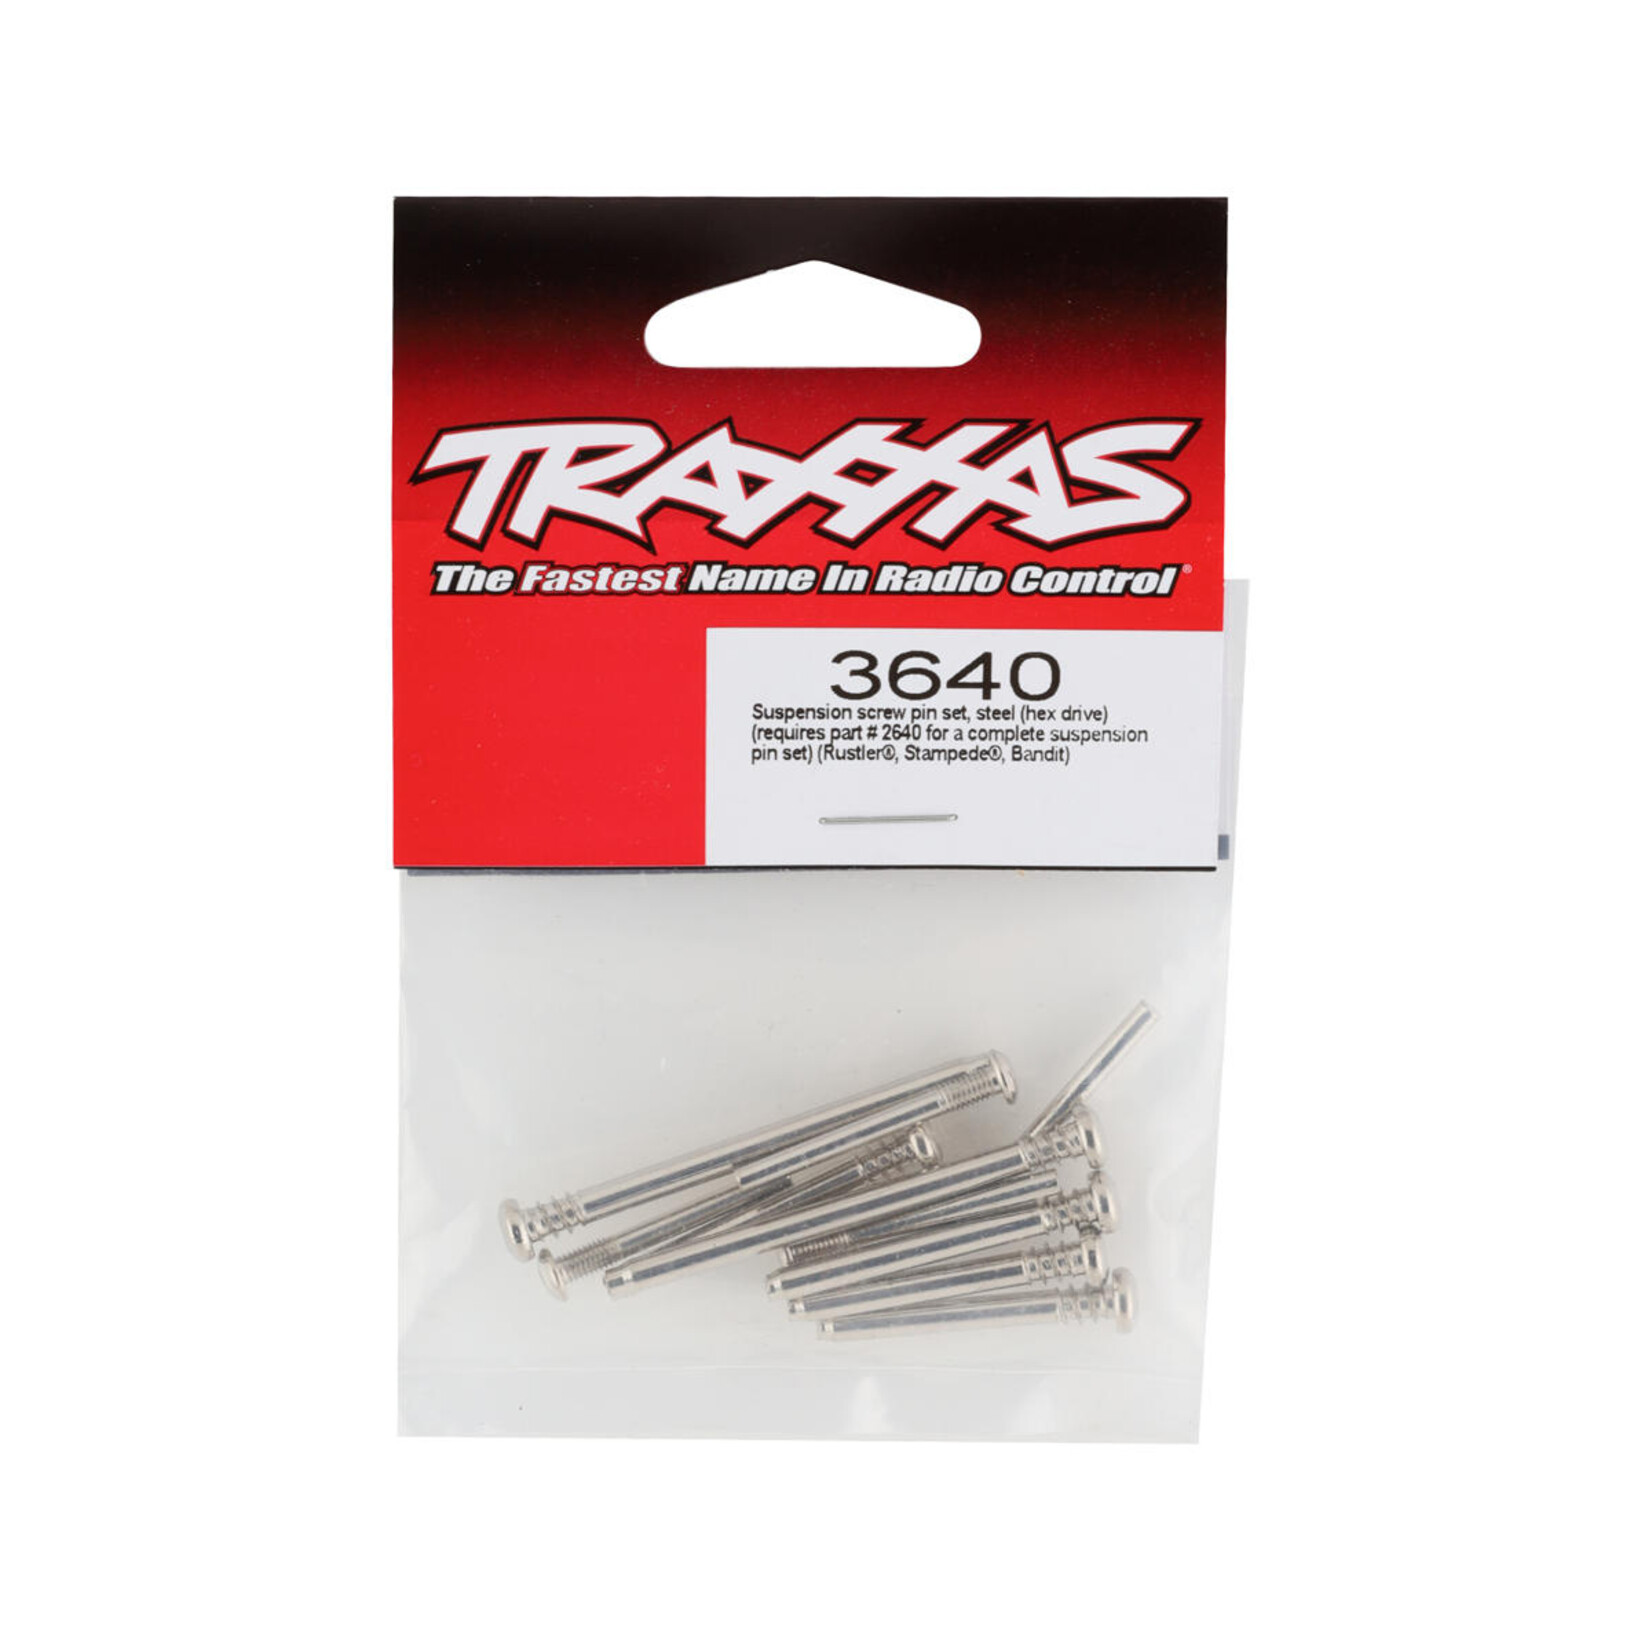 Traxxas Traxxas Steel Suspension Screw Pin Set (VXL) #3640